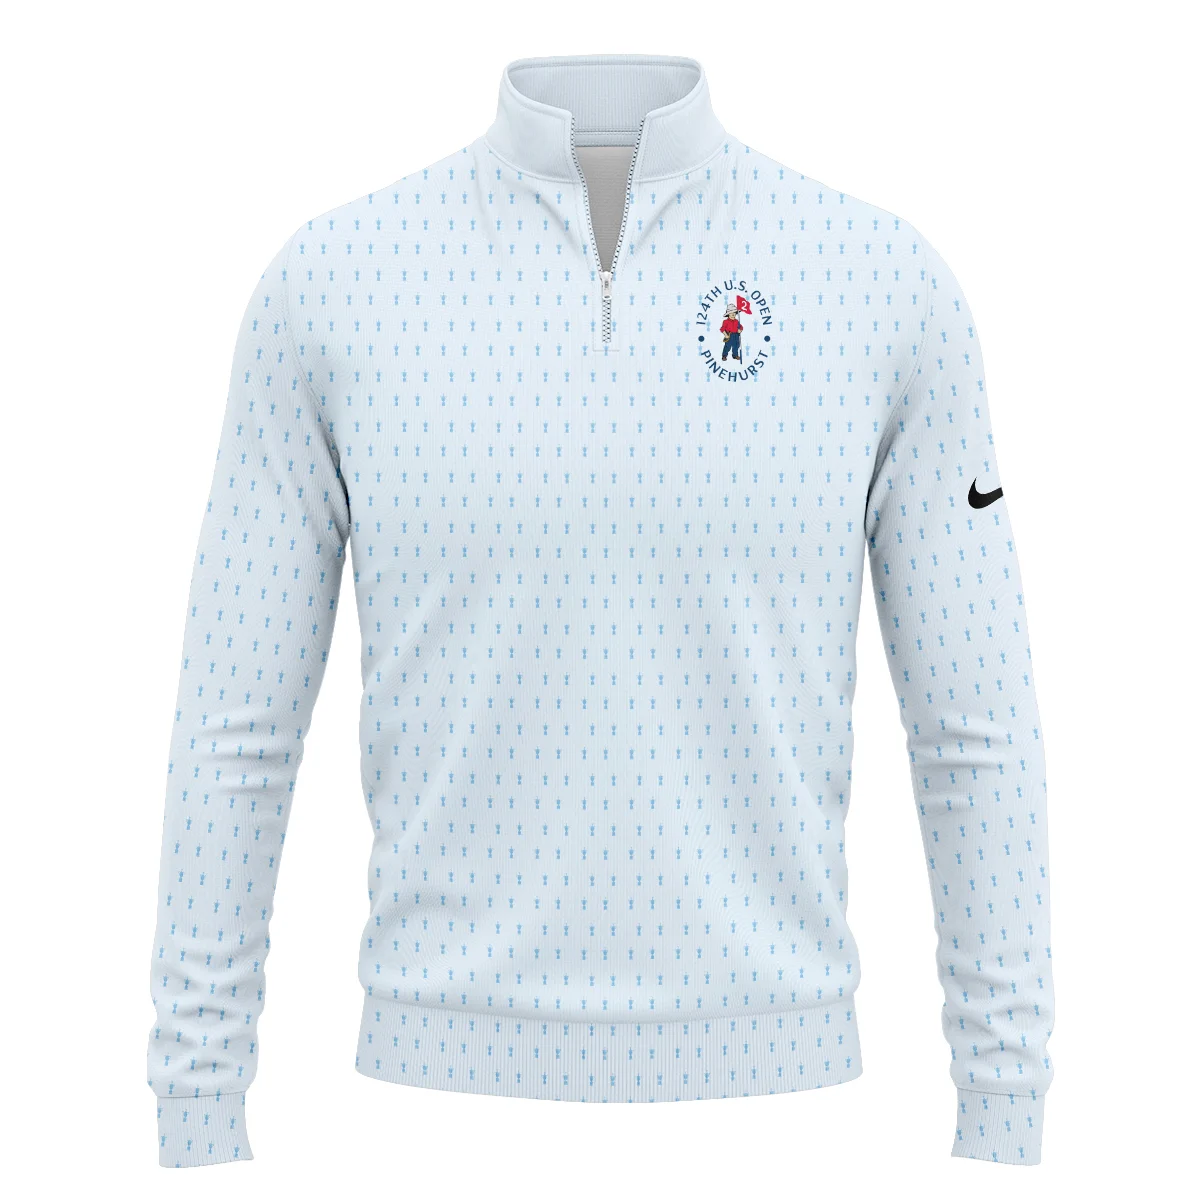 Golf Pattern Cup Light Blue Green 124th U.S. Open Pinehurst Nike Zipper Hoodie Shirt Style Classic Zipper Hoodie Shirt